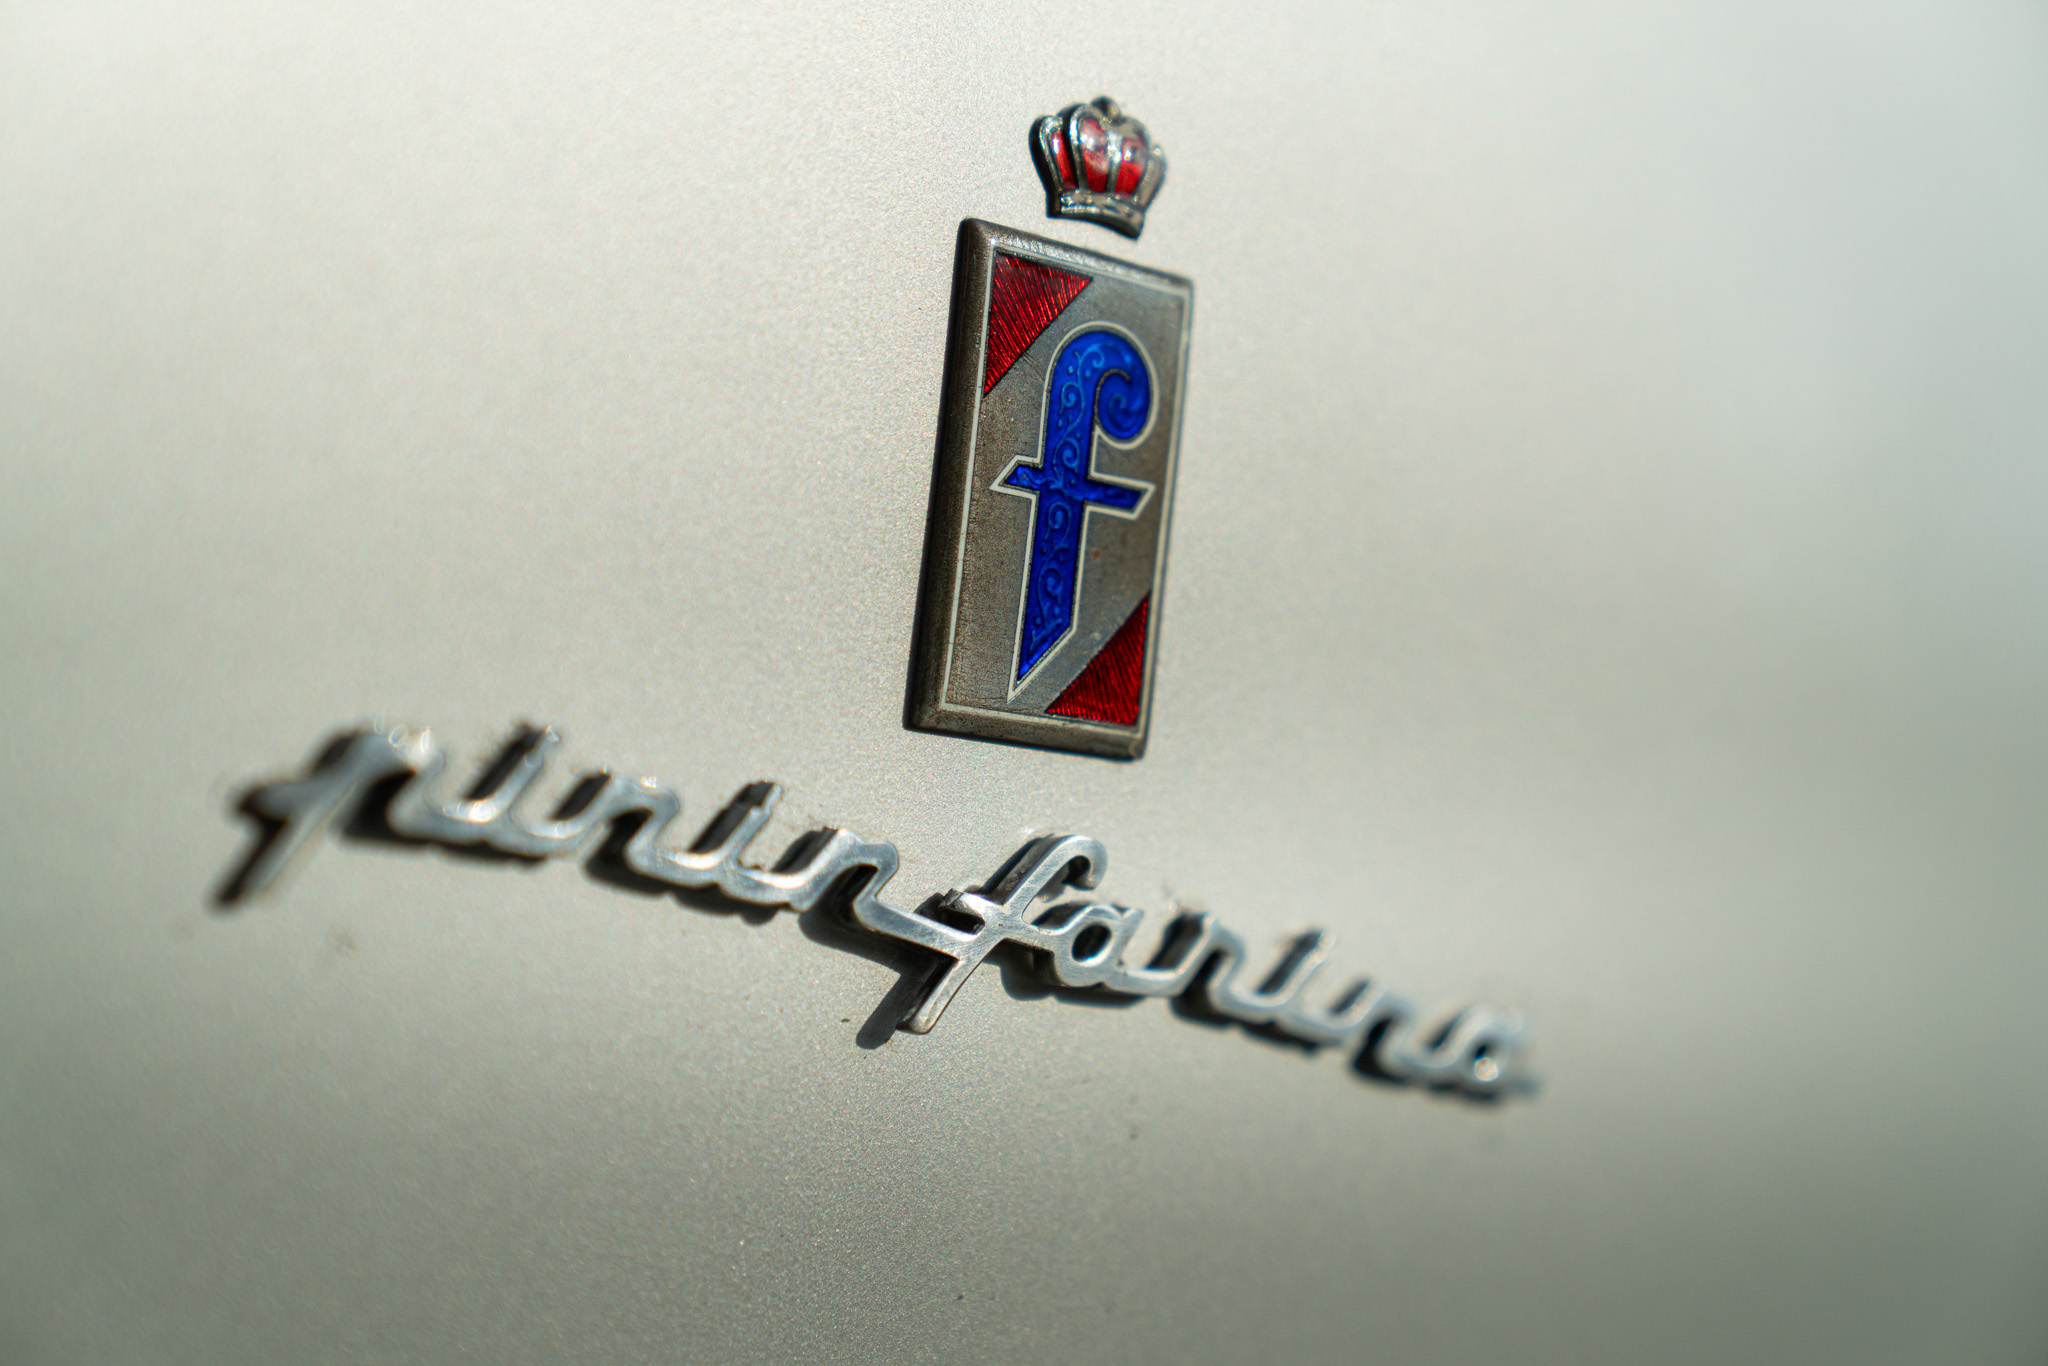 Lancia FLAMINIA 2.8 3C PININFARINA coupé 